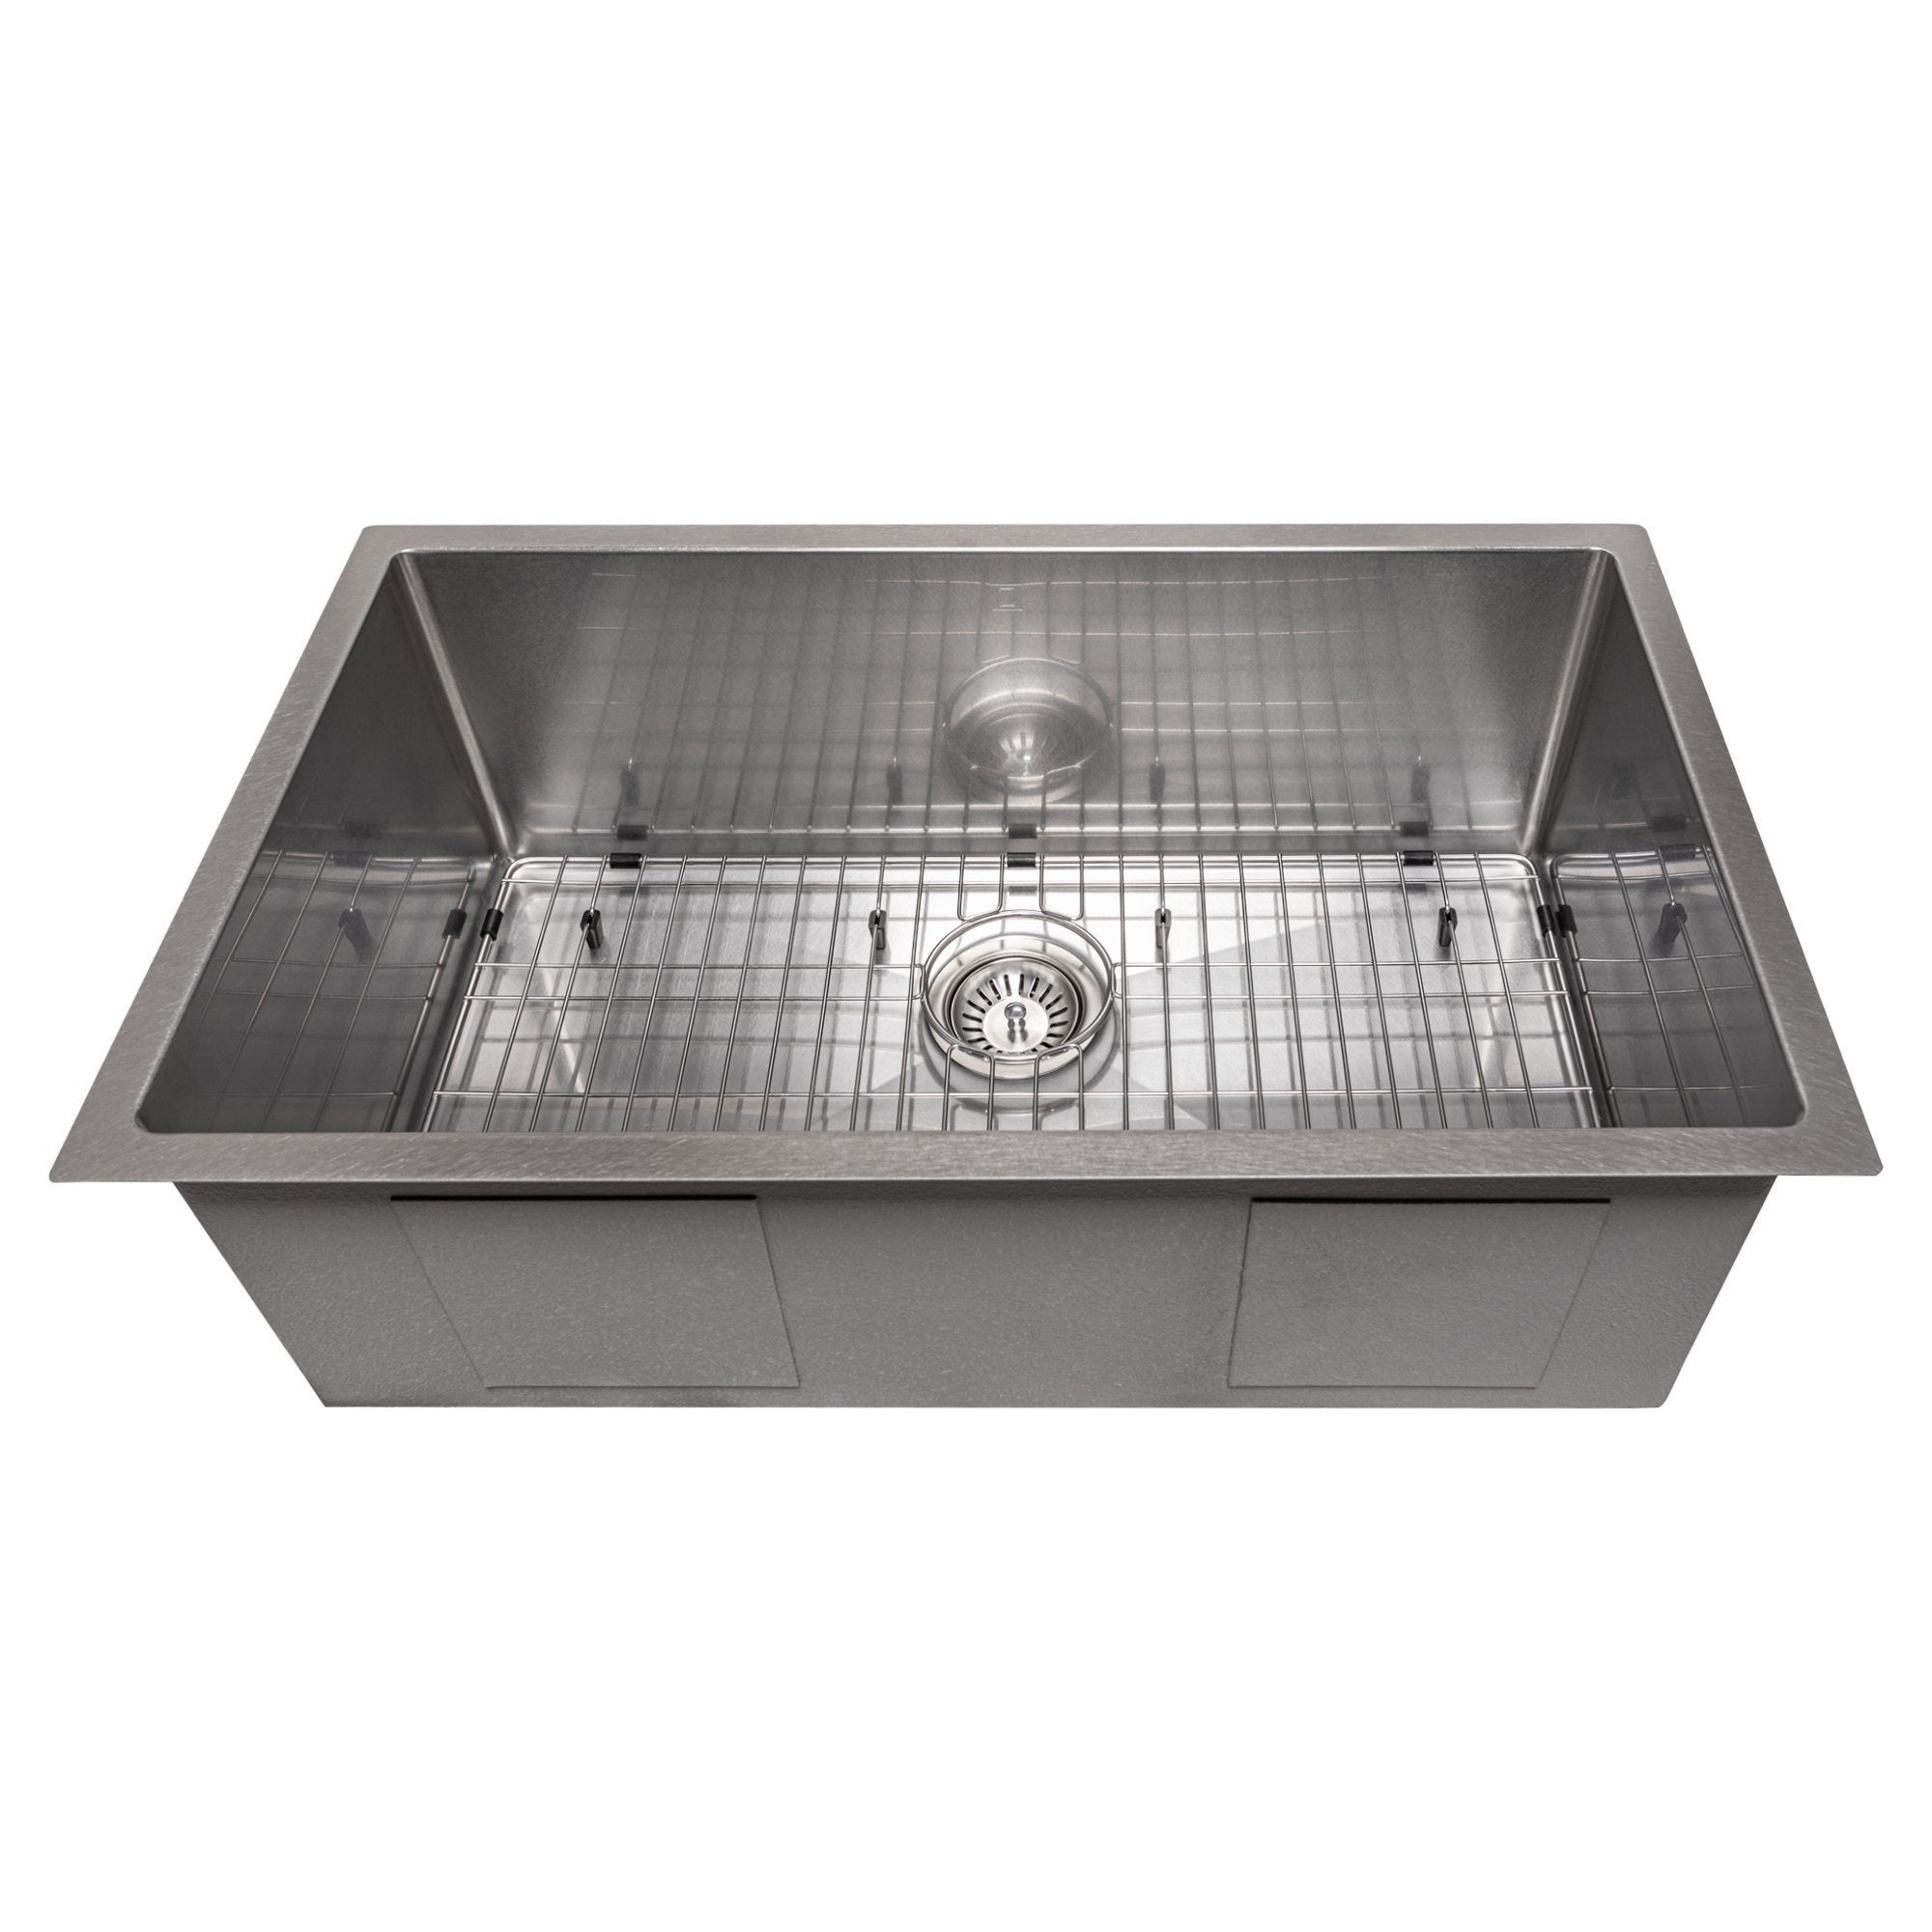 ZLINE 30 in. Meribel Undermount Single Bowl Kitchen Sink with Bottom Grid (SRS-30) DuraSnow Stainless Steel